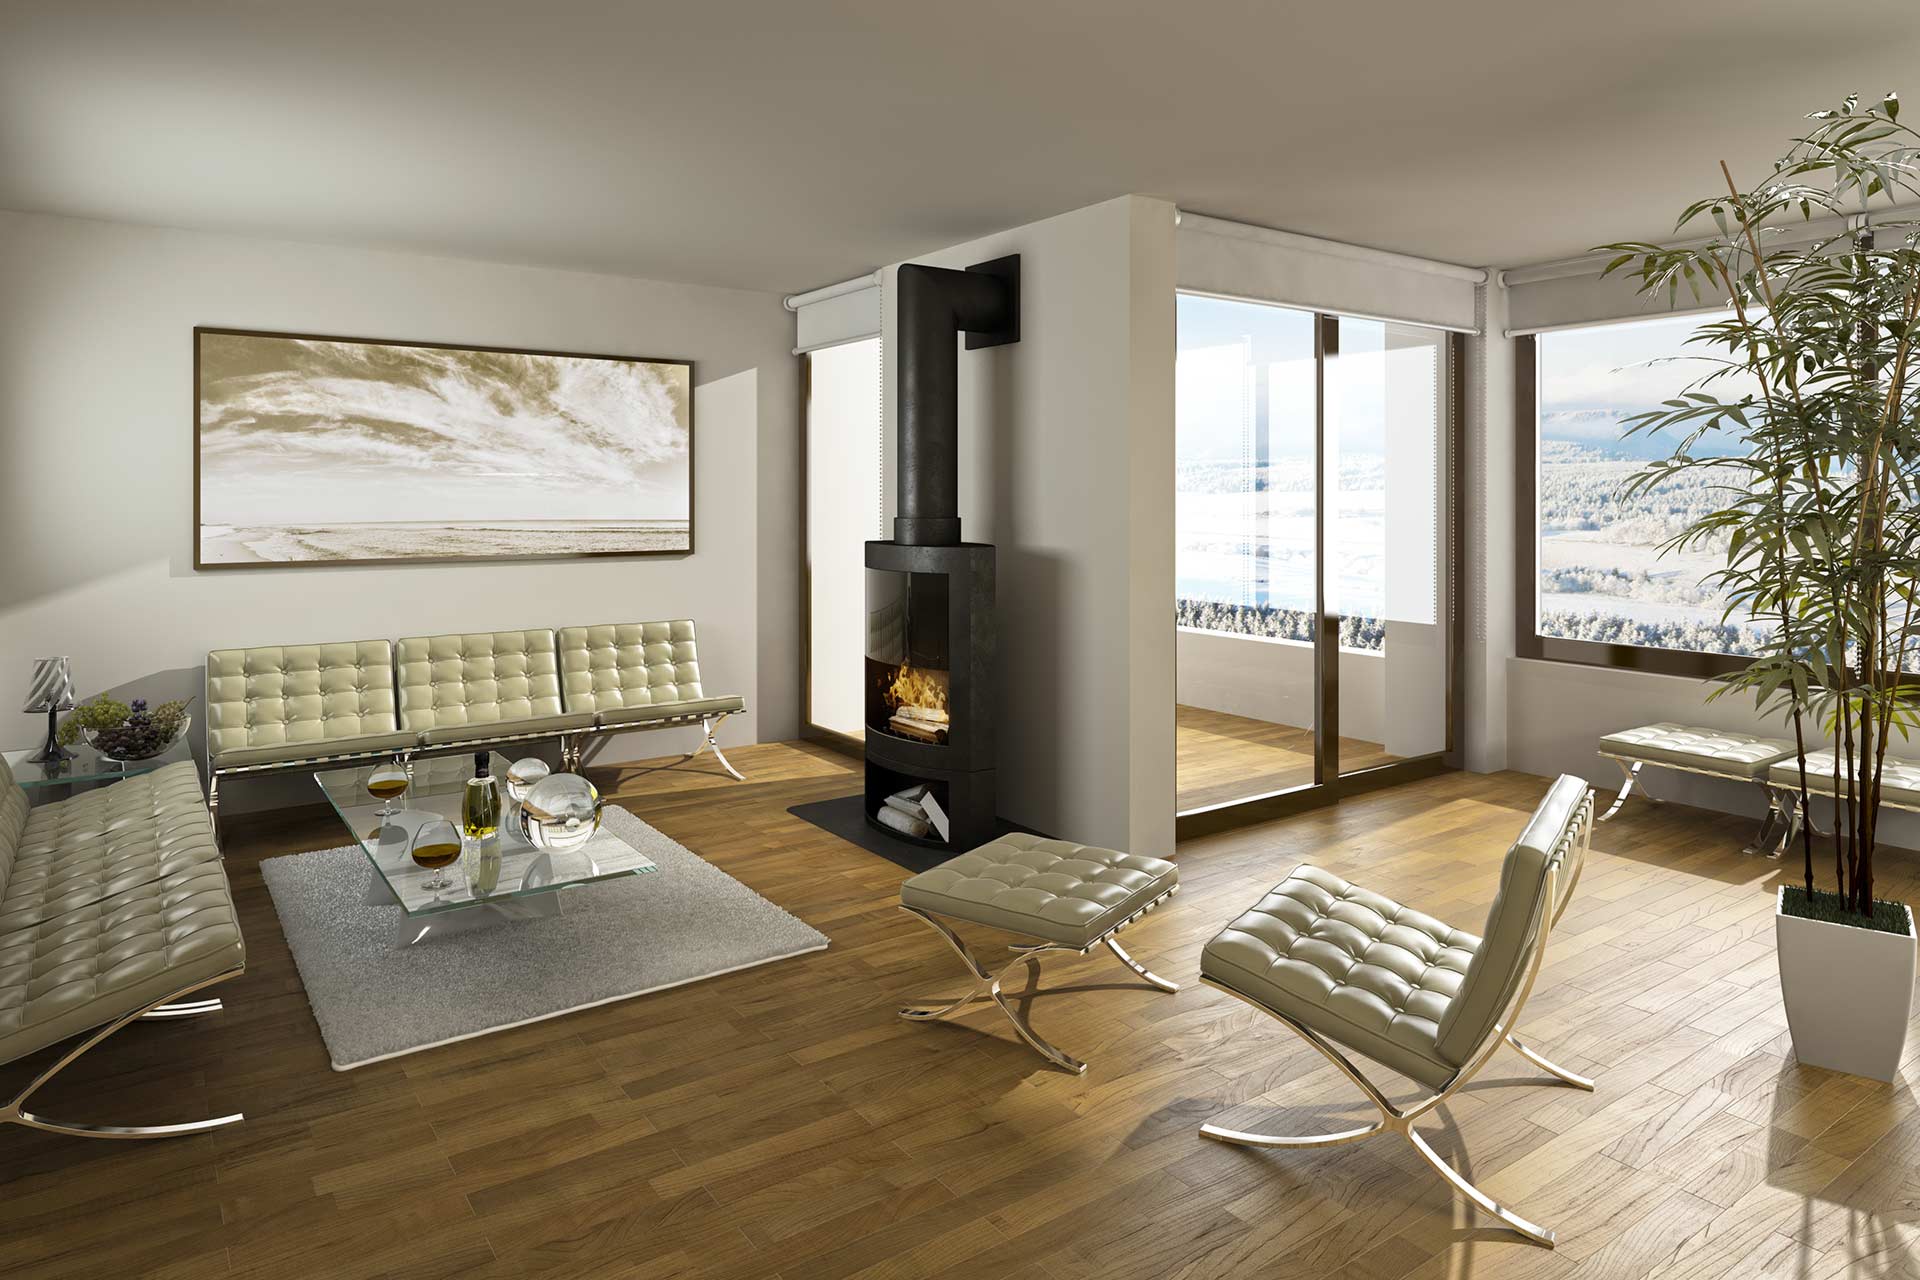 Holzboden, Parkettboden im modernen Wohnzimmer